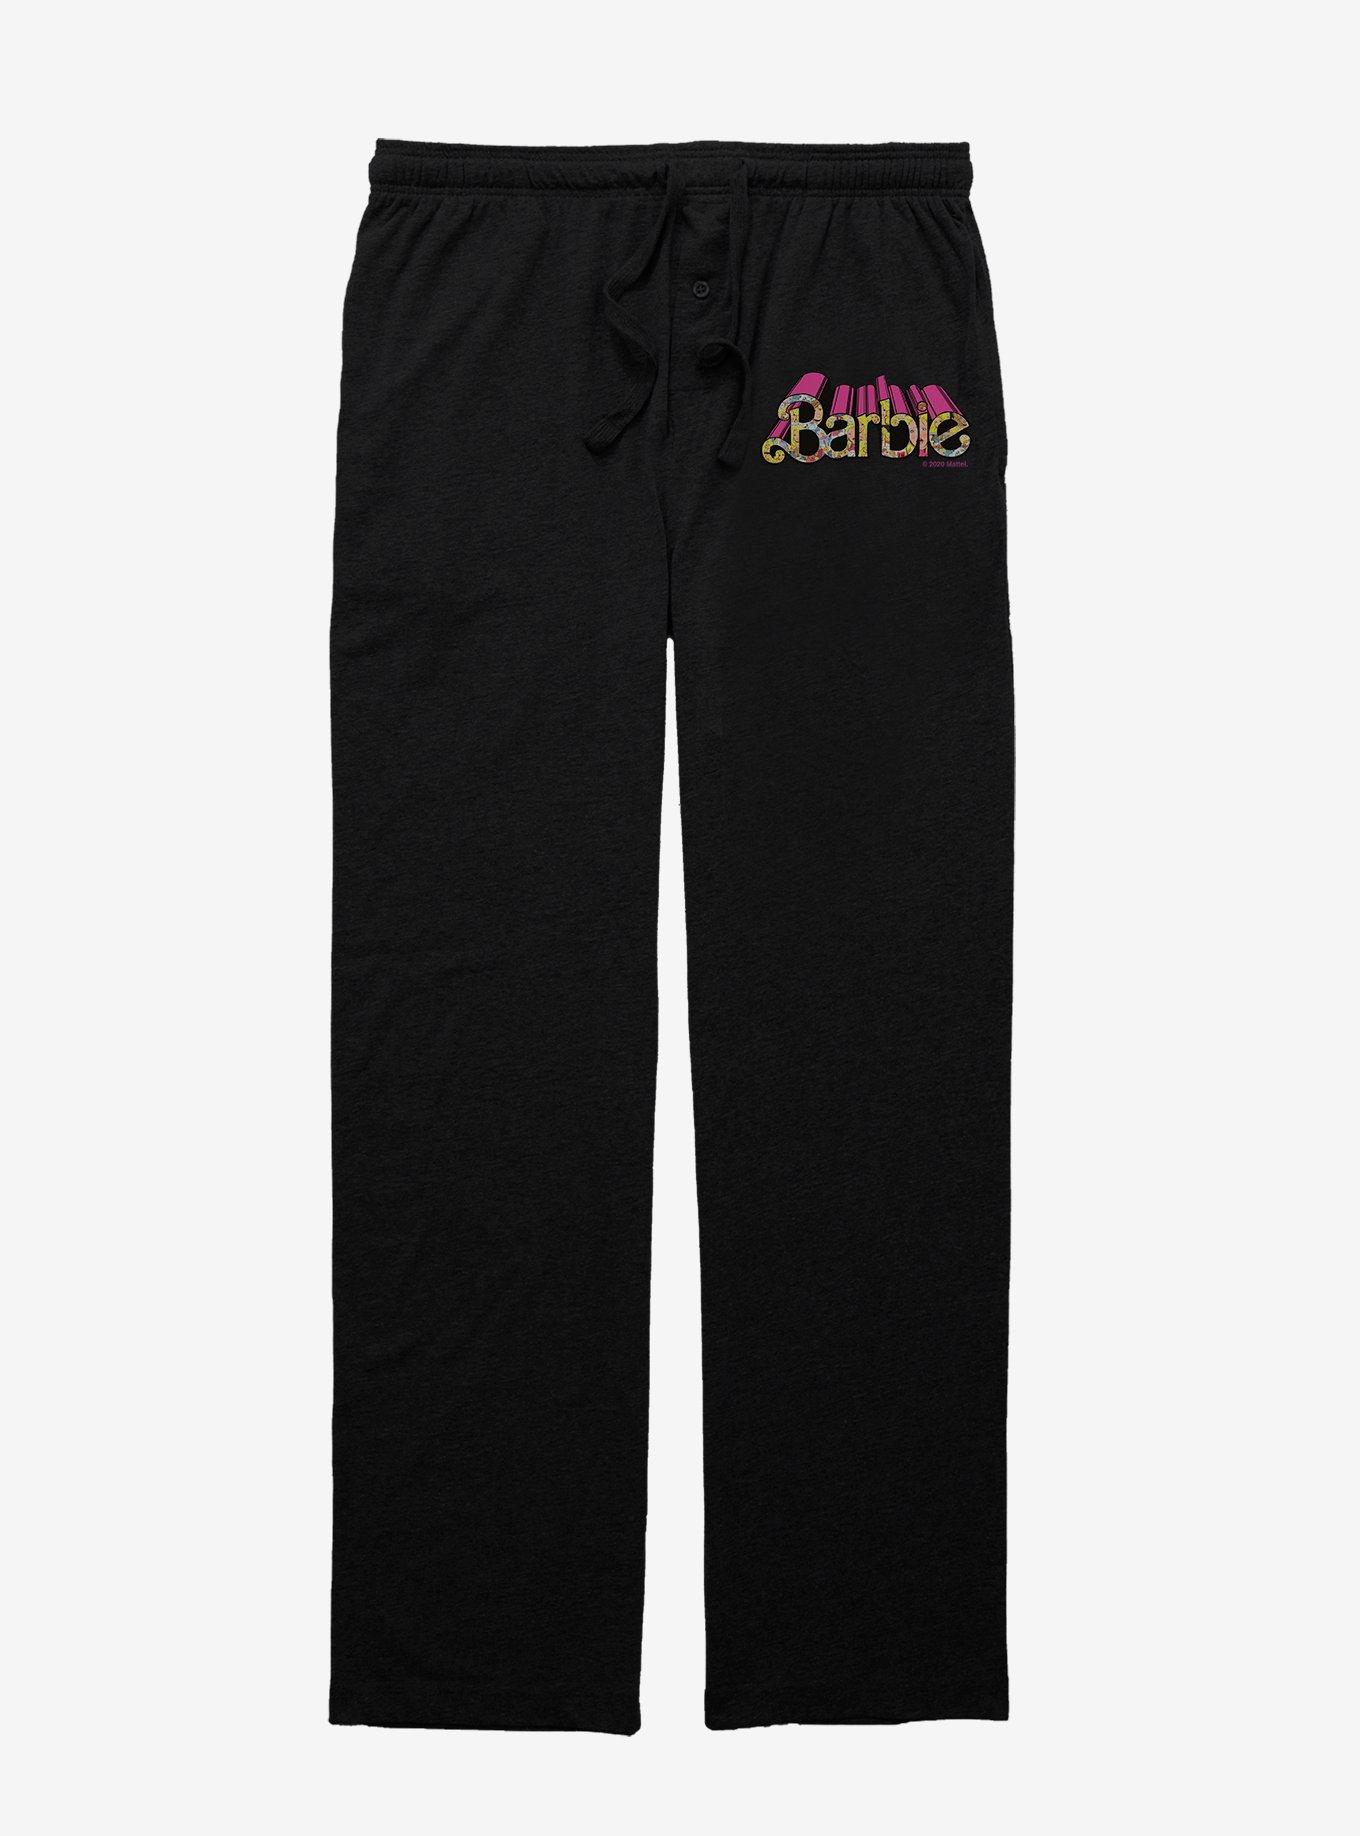 Barbie Groovy Pajama Pants, BLACK, hi-res